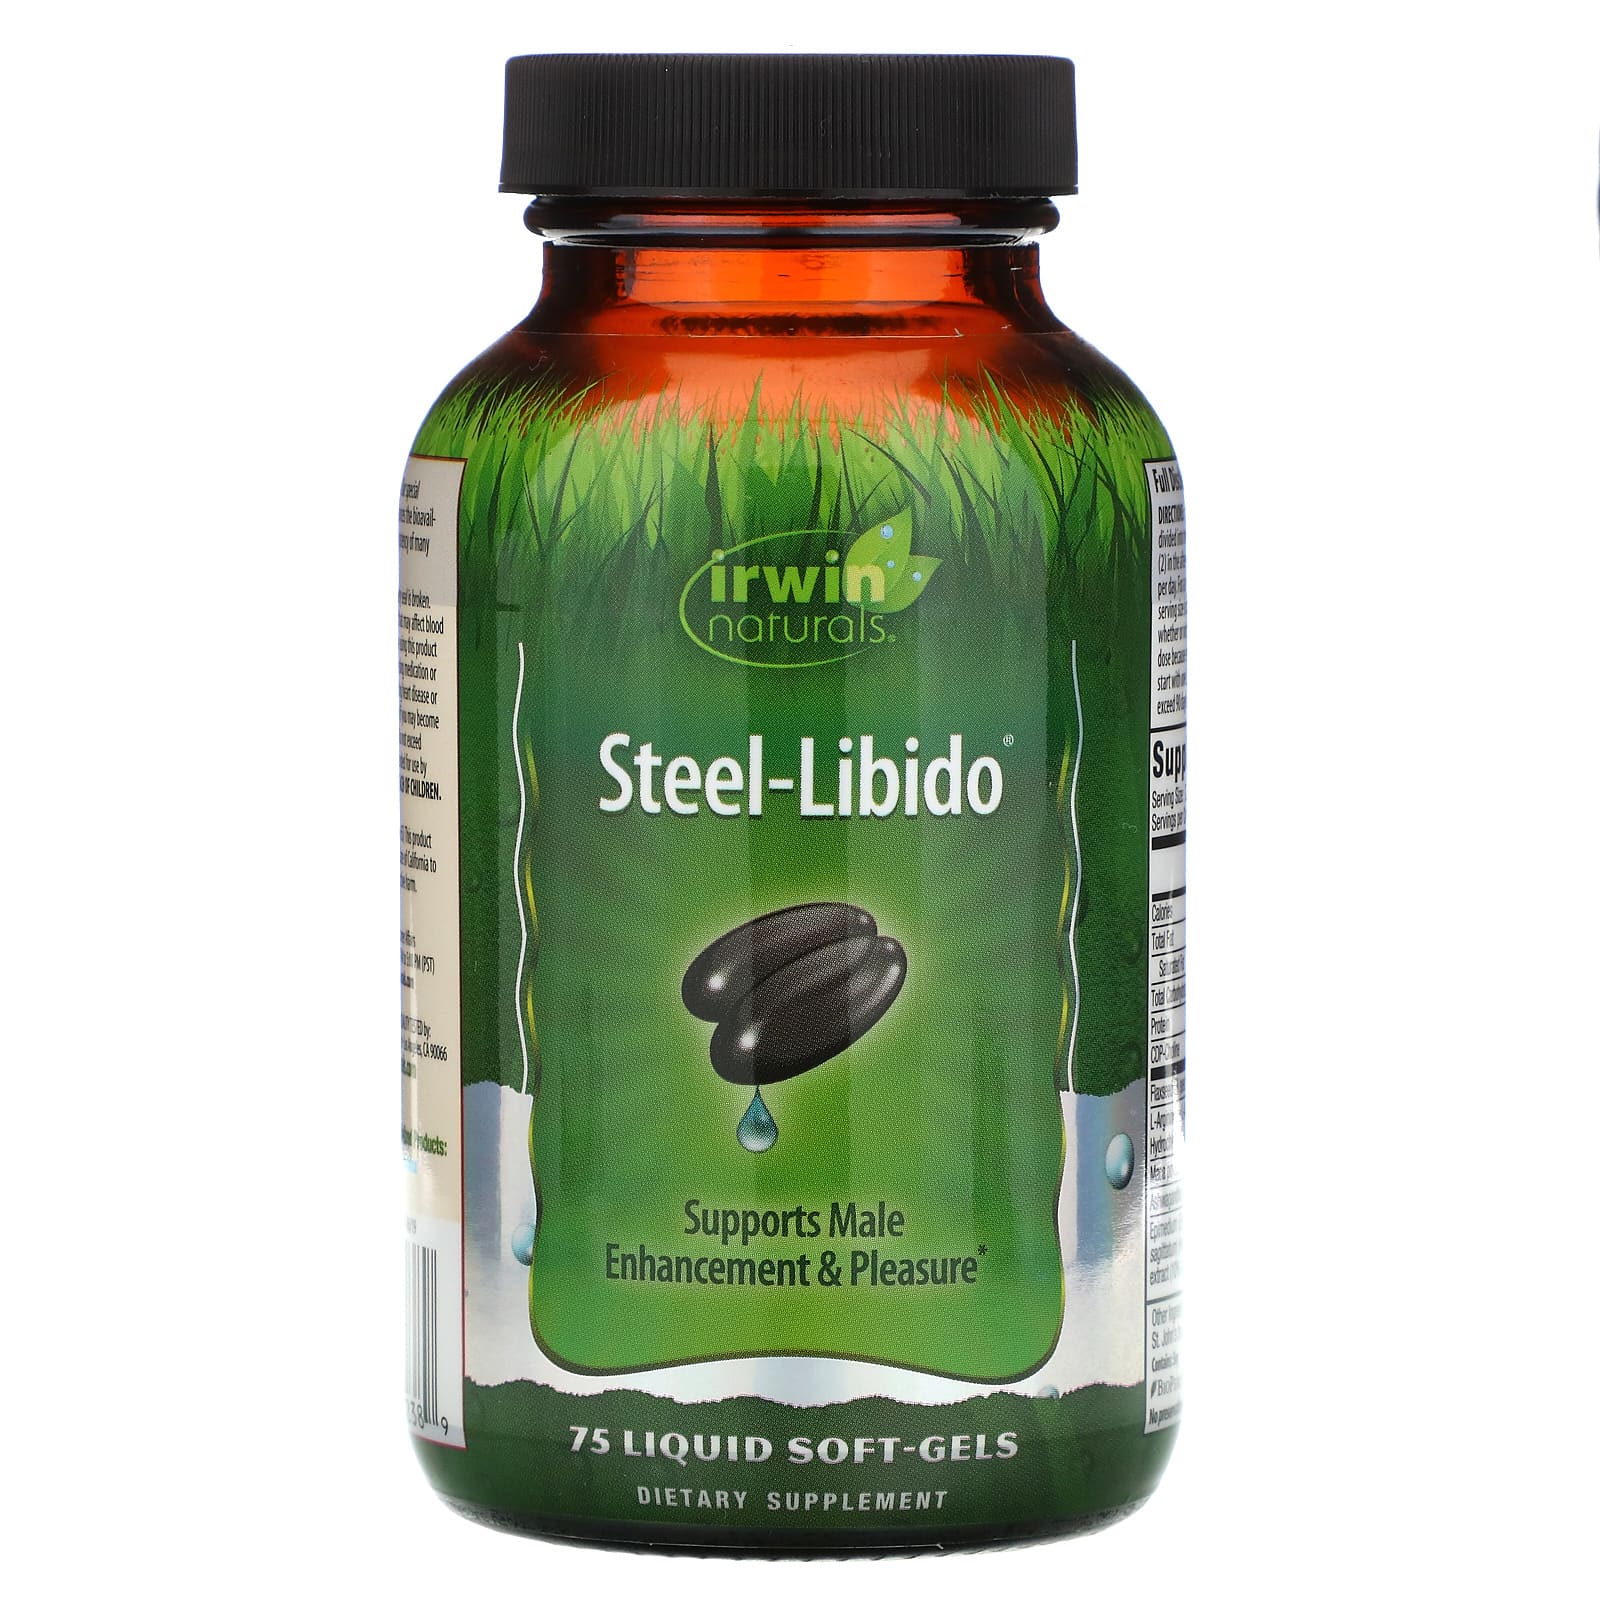 Irwin Naturals Steel Libido, 75 Liquid Soft-Gels